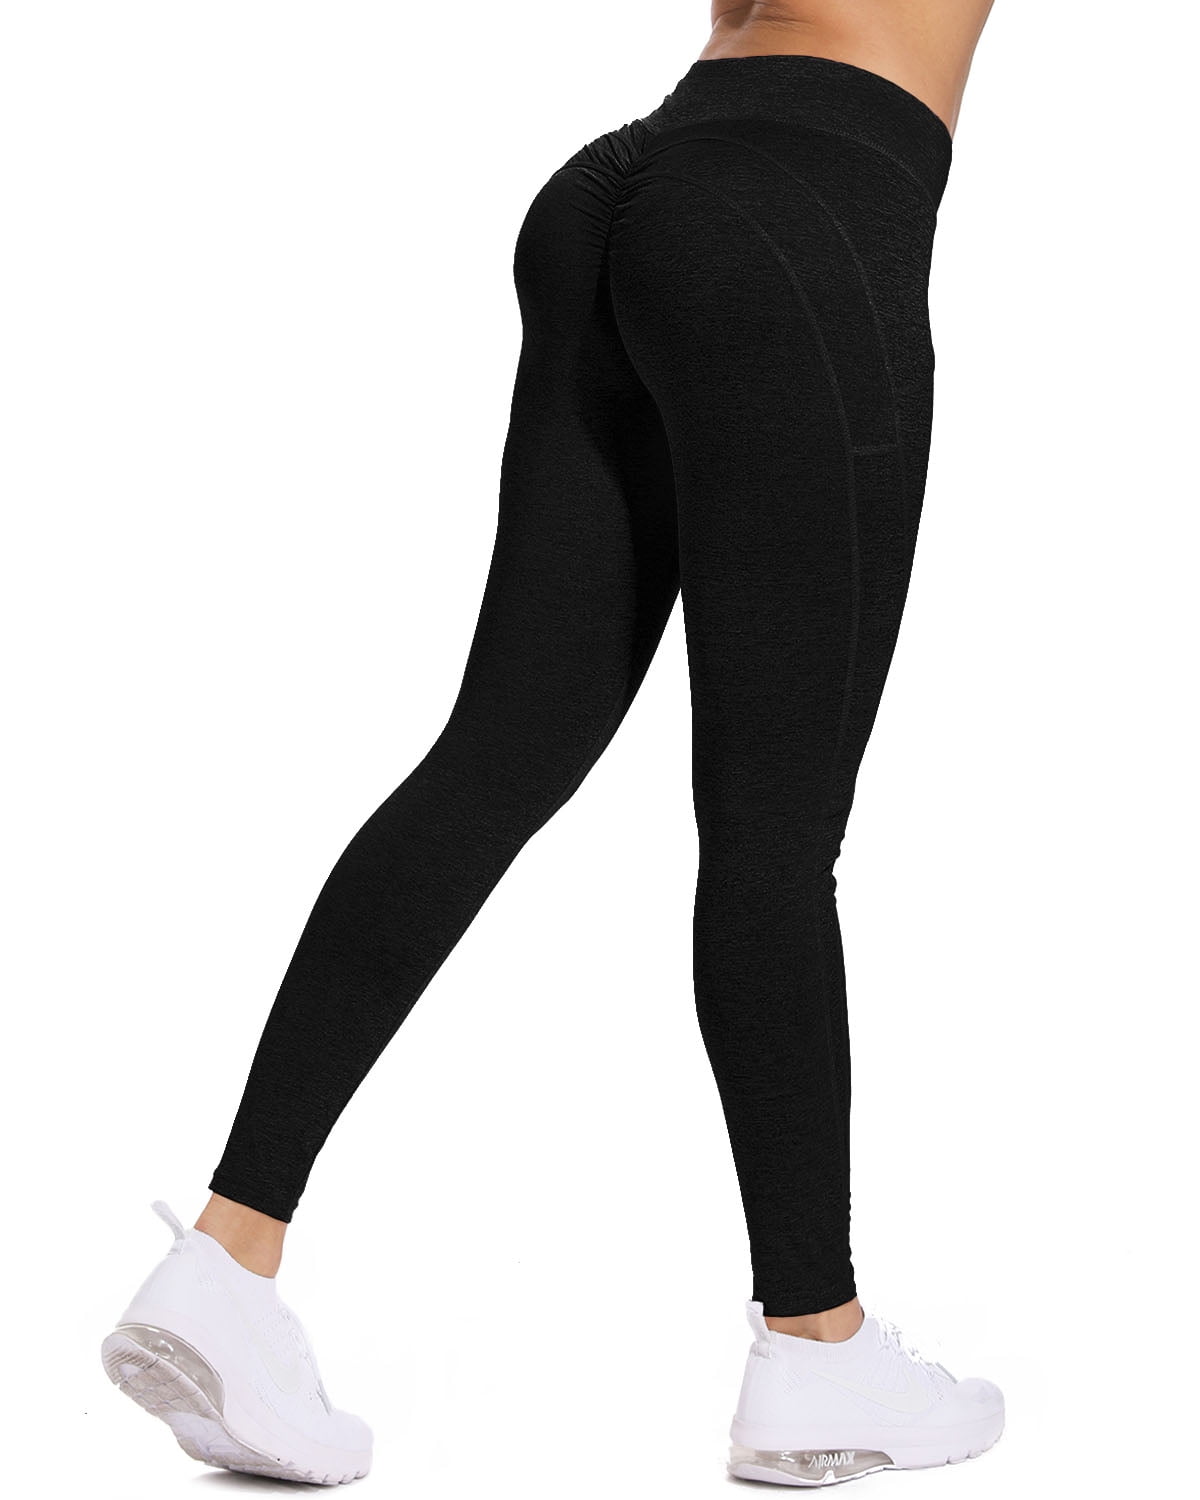 INFILAR Women's High Waist Yoga Leggings Tummy Control Scrunch Butt ...